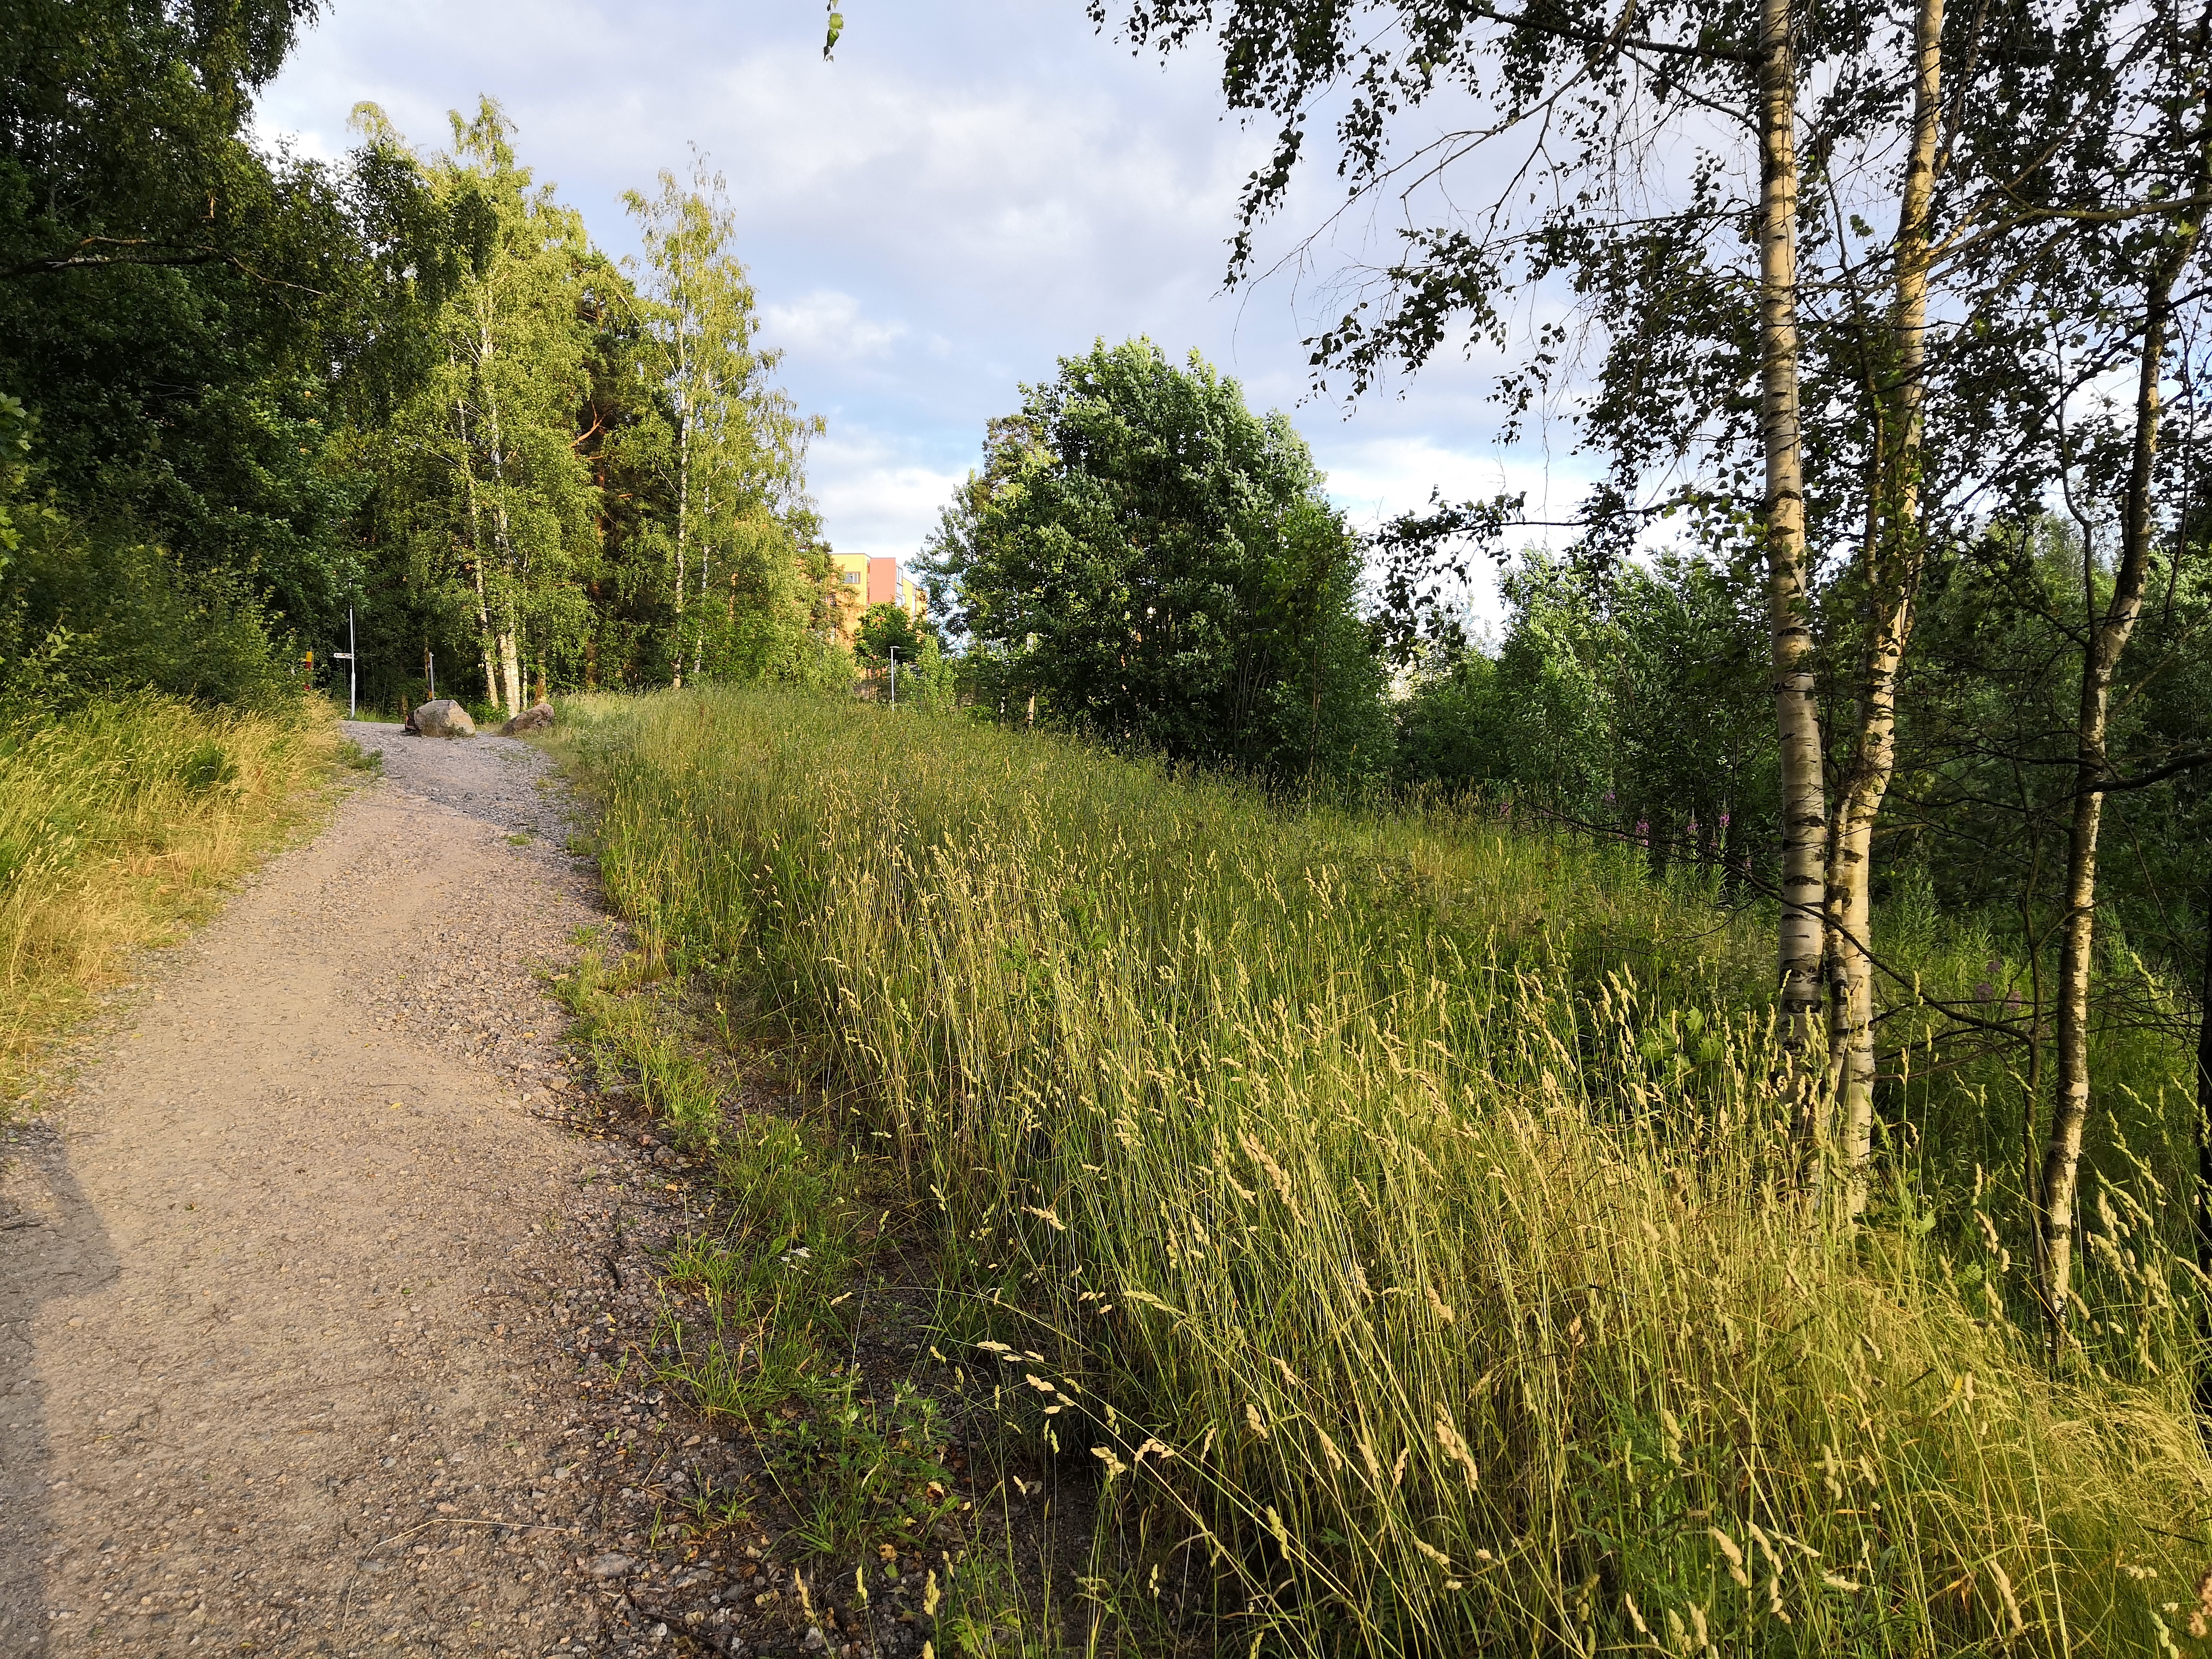 Paukkulanpuisto. Taustalla näkyy Kivijatatie 4:n rakennus. Puiston alueella on sijainnut puolustusvoimien rakentama Malmin ampumarata, joka valmistui vuonna 1937 Helsingissä järjestettyihin ammunnan MM-kisoihin, ja suljettiin vuonna 1993.  Puistossa on maisemallisesti arvokasta puustoa, jota tulee hoitaa elinvoimaisena, ja uudistaa siten että sen maisemallinen arvo säilyy. rephoto